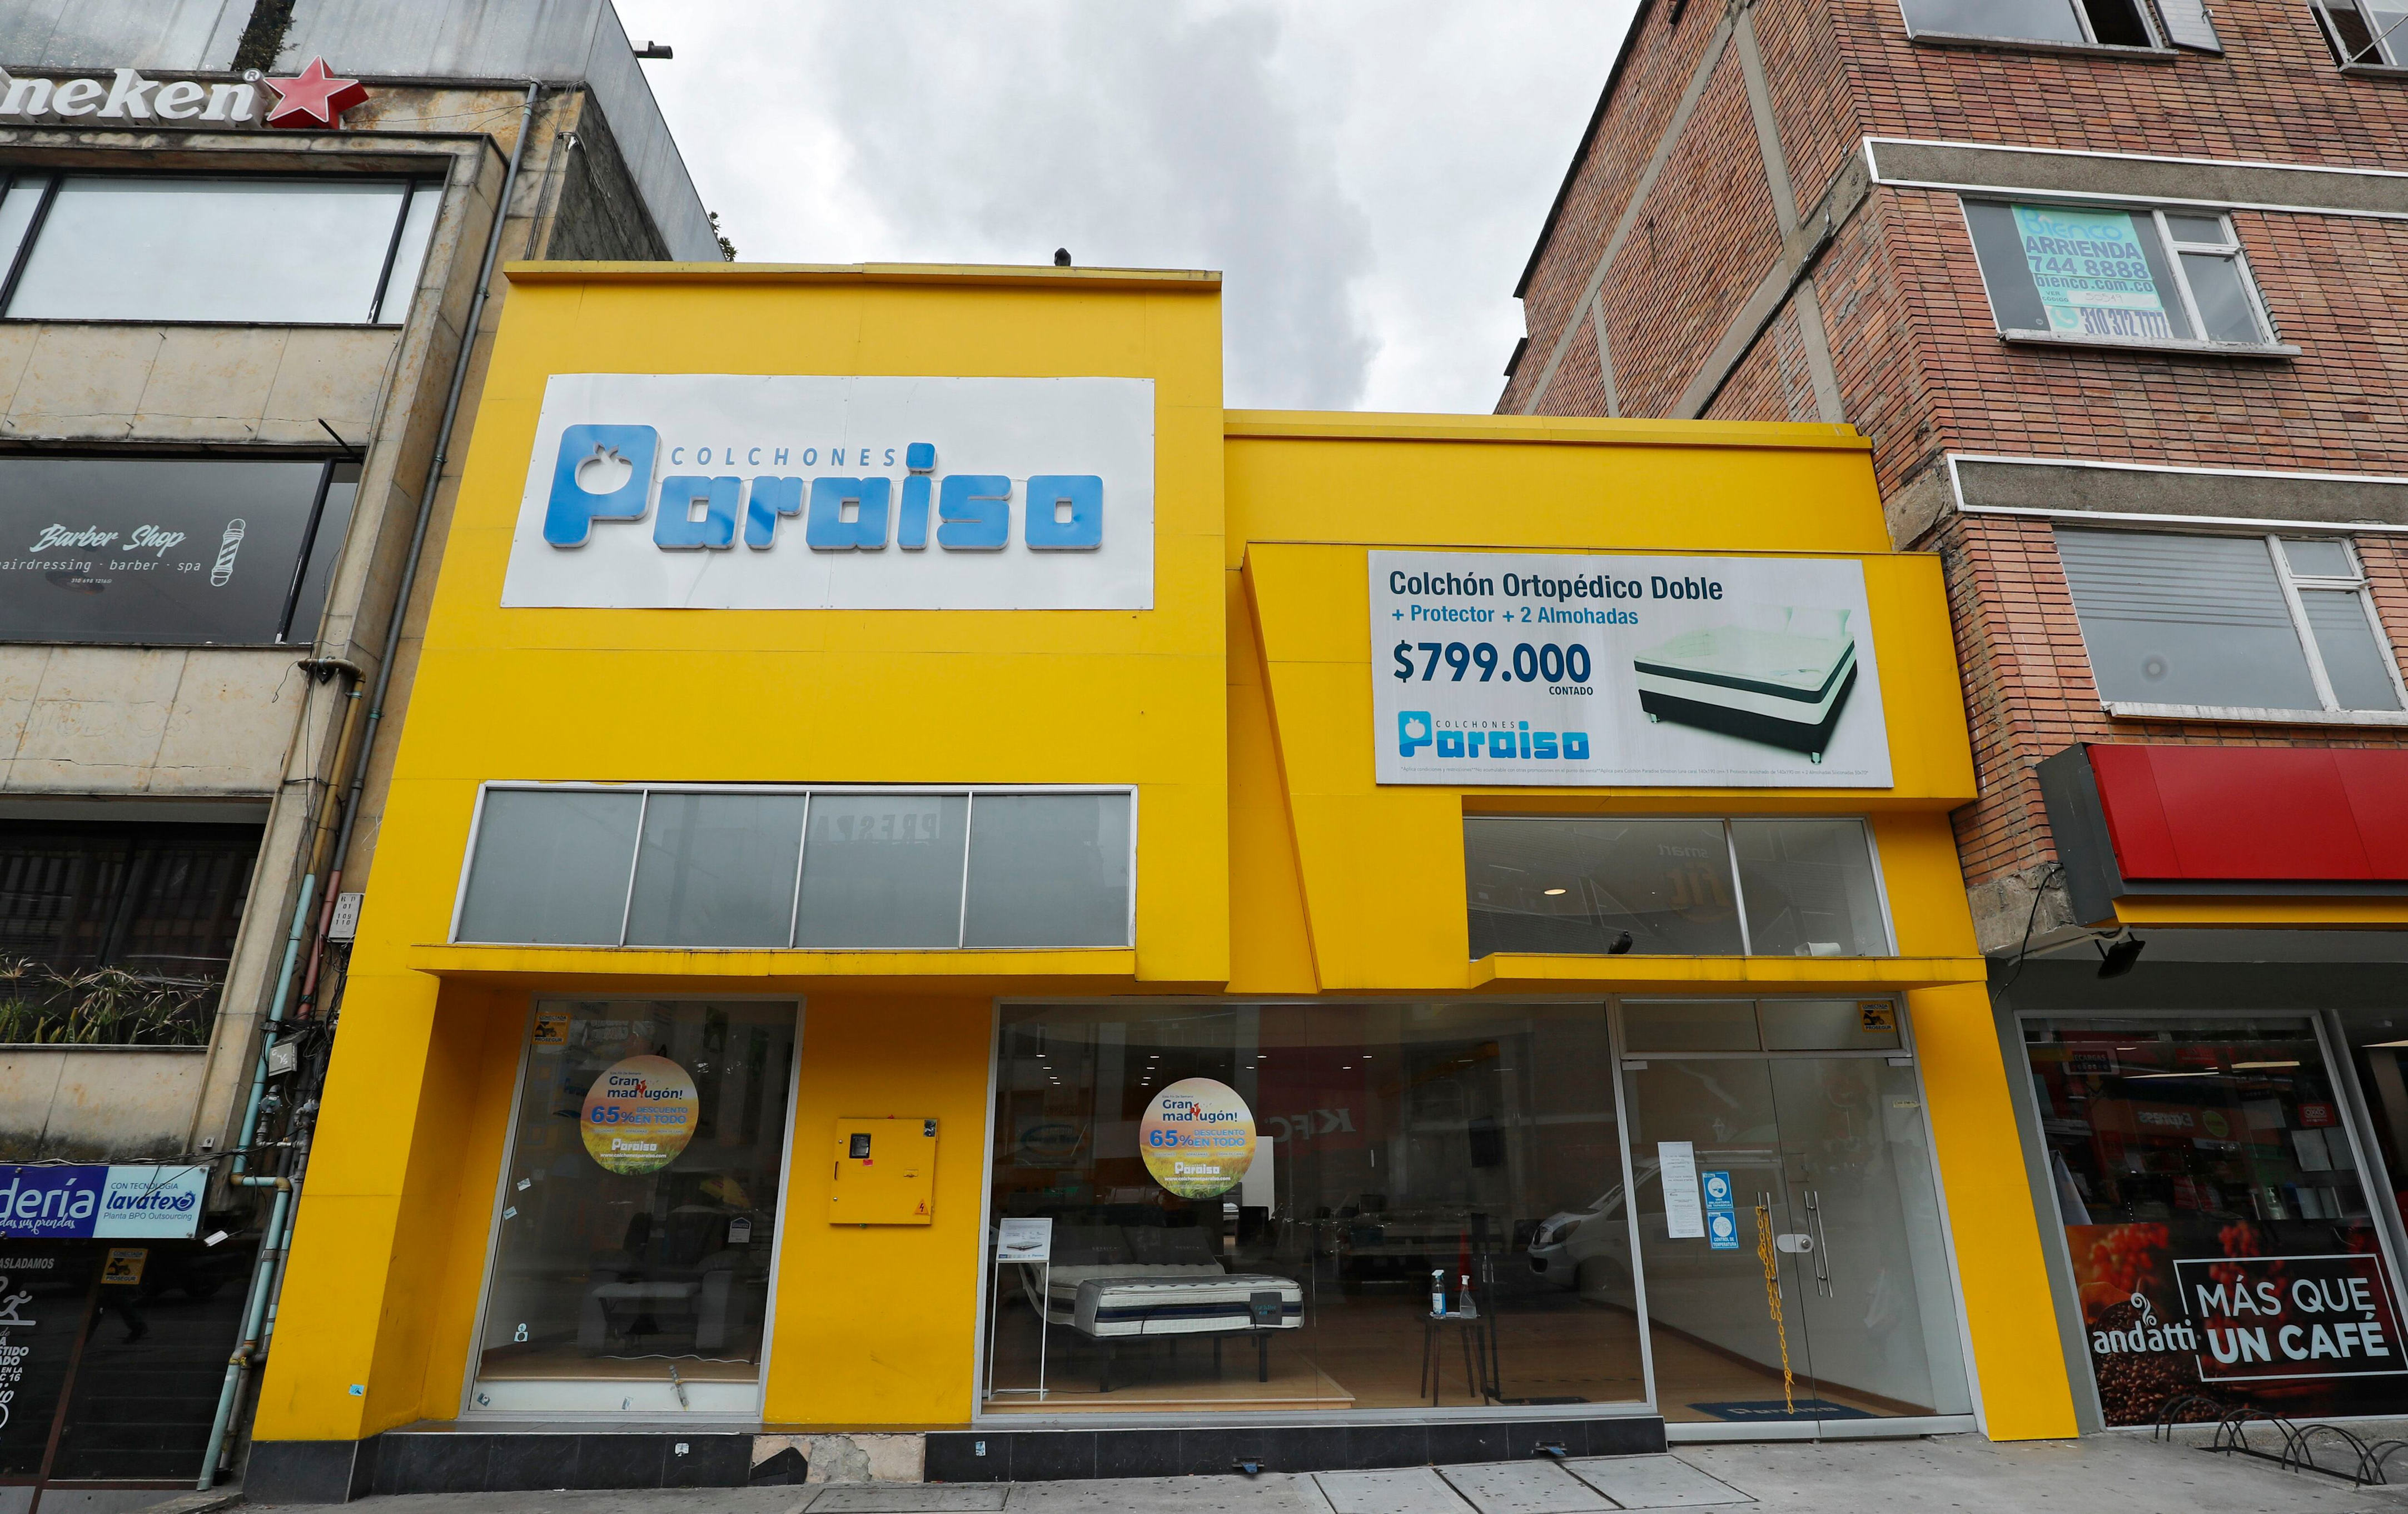 famosa empresa de colchones y muebles se quebró en colombia: incertidumbre entre clientes y empleados